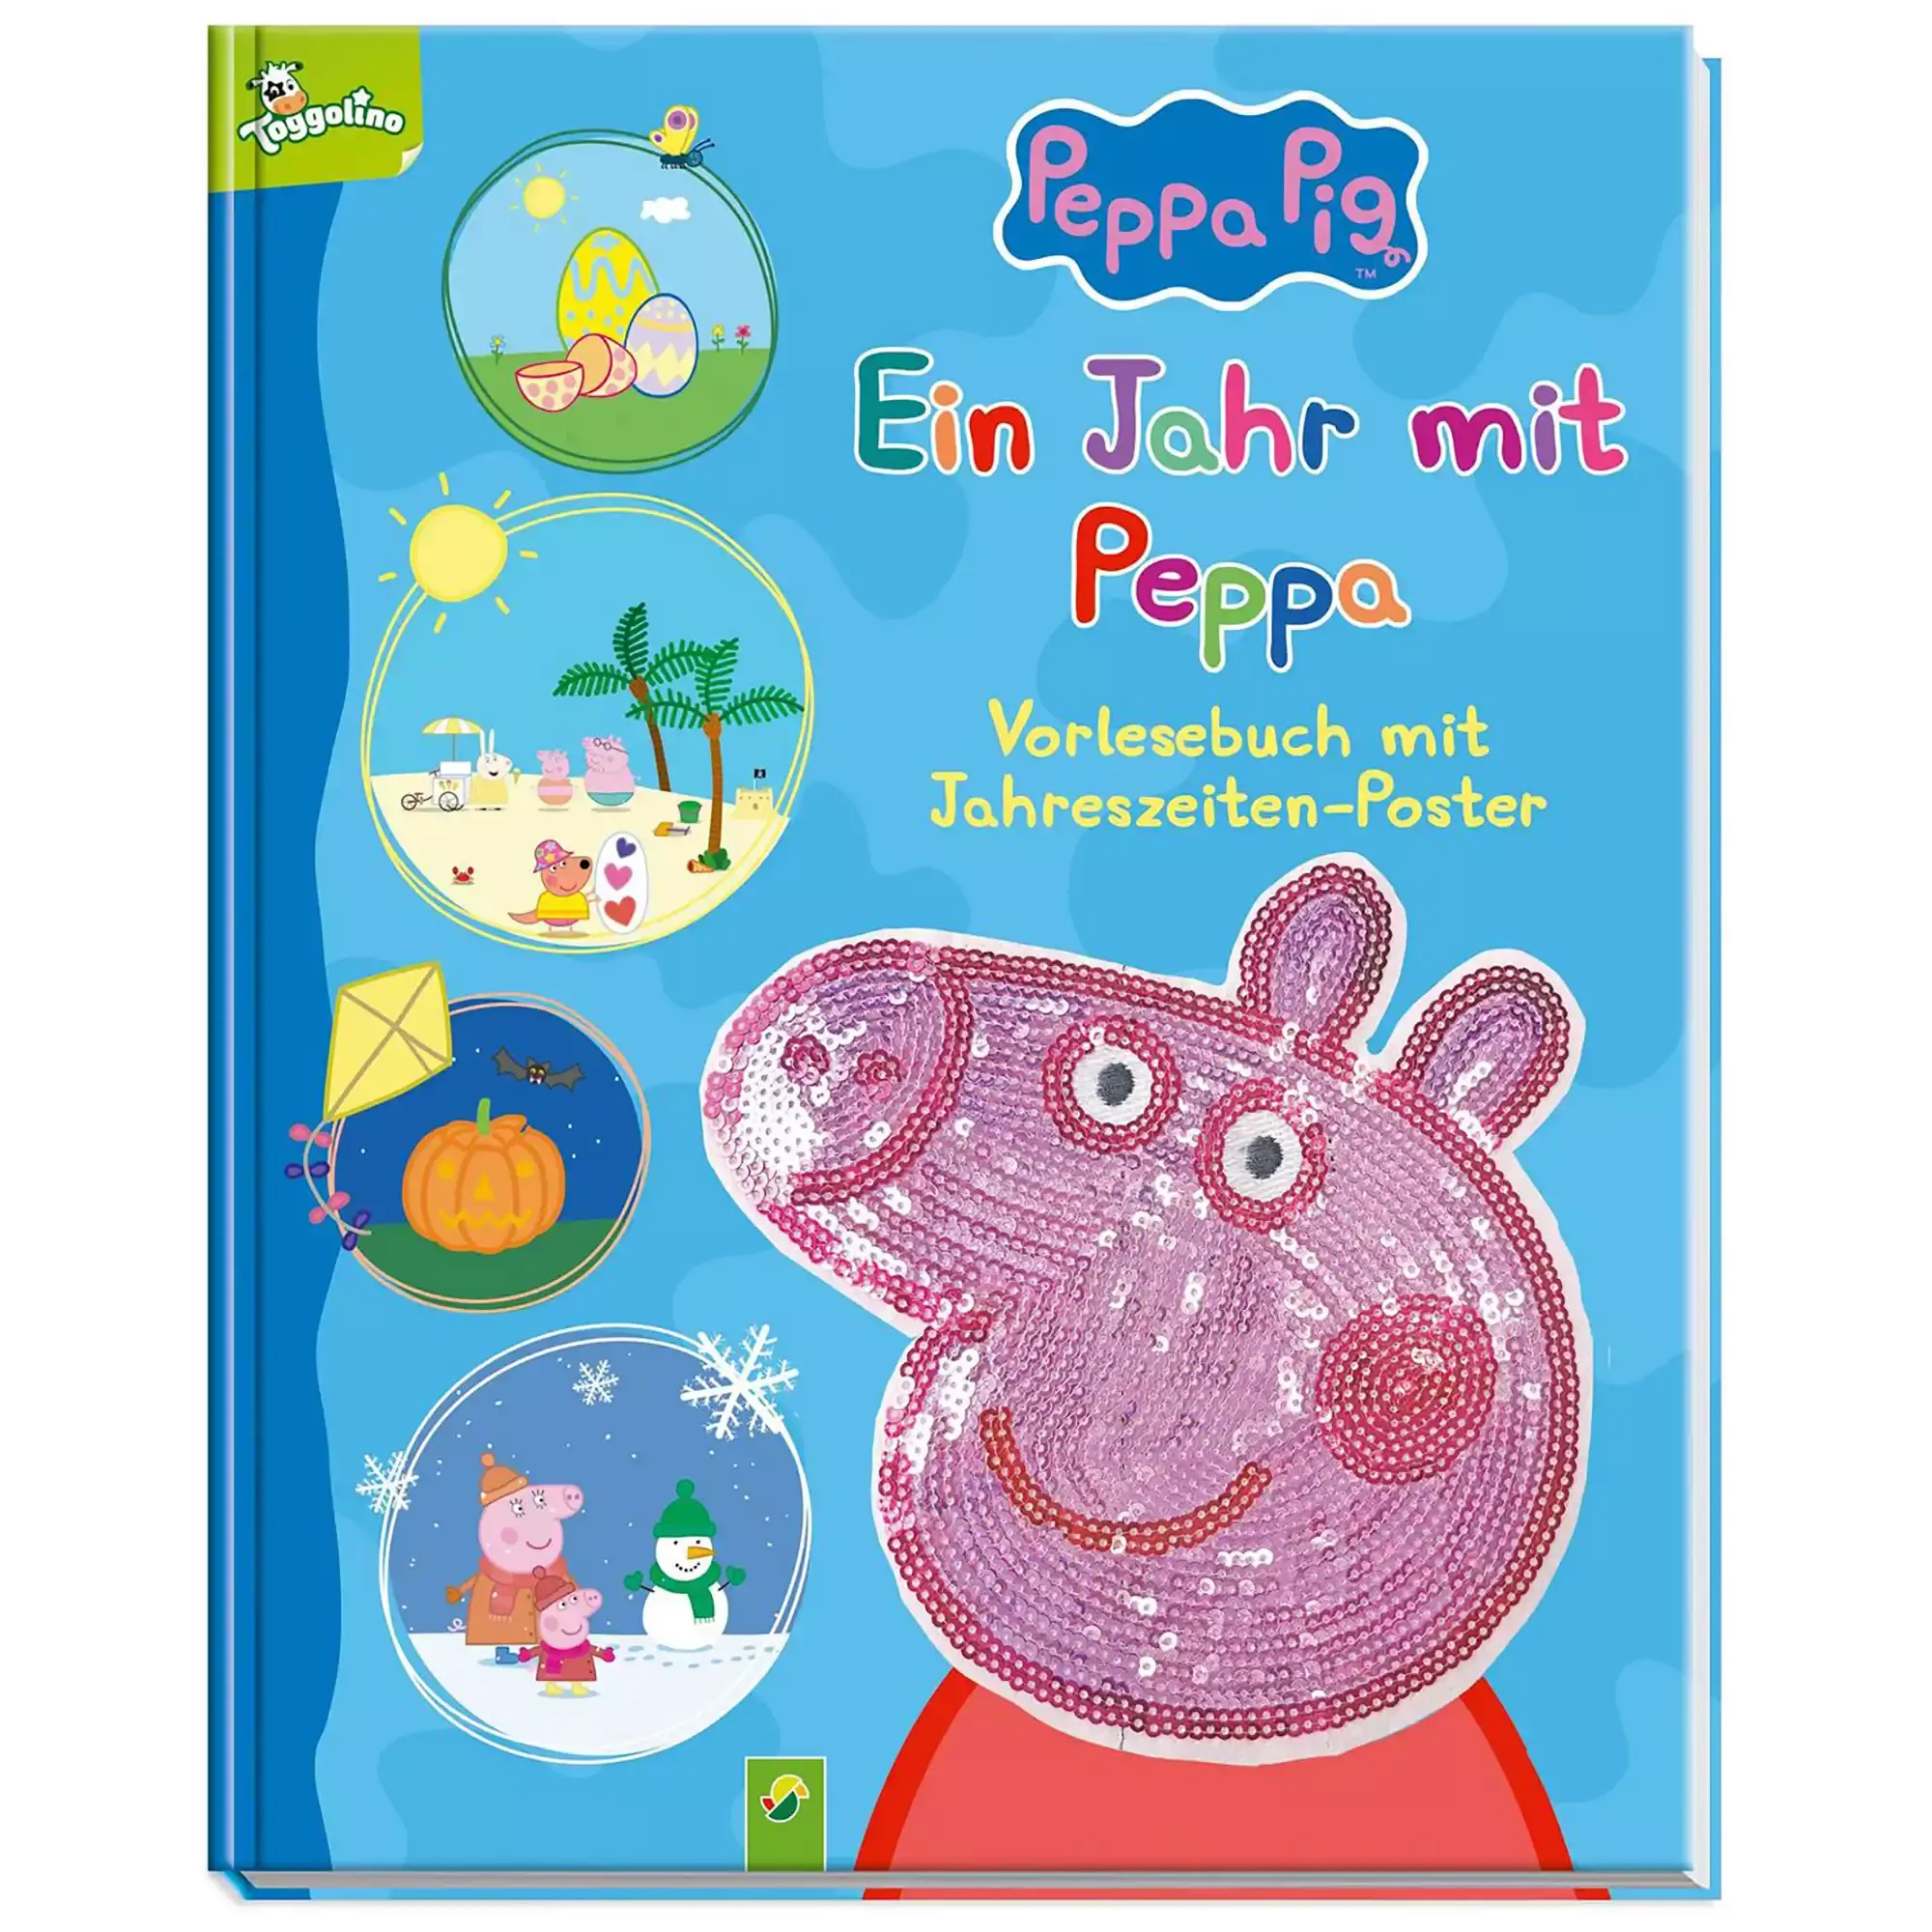 Peppa Pig: Ein Jahr mit Peppa Schwager&Steinl Mehrfarbig 2000579398506 1